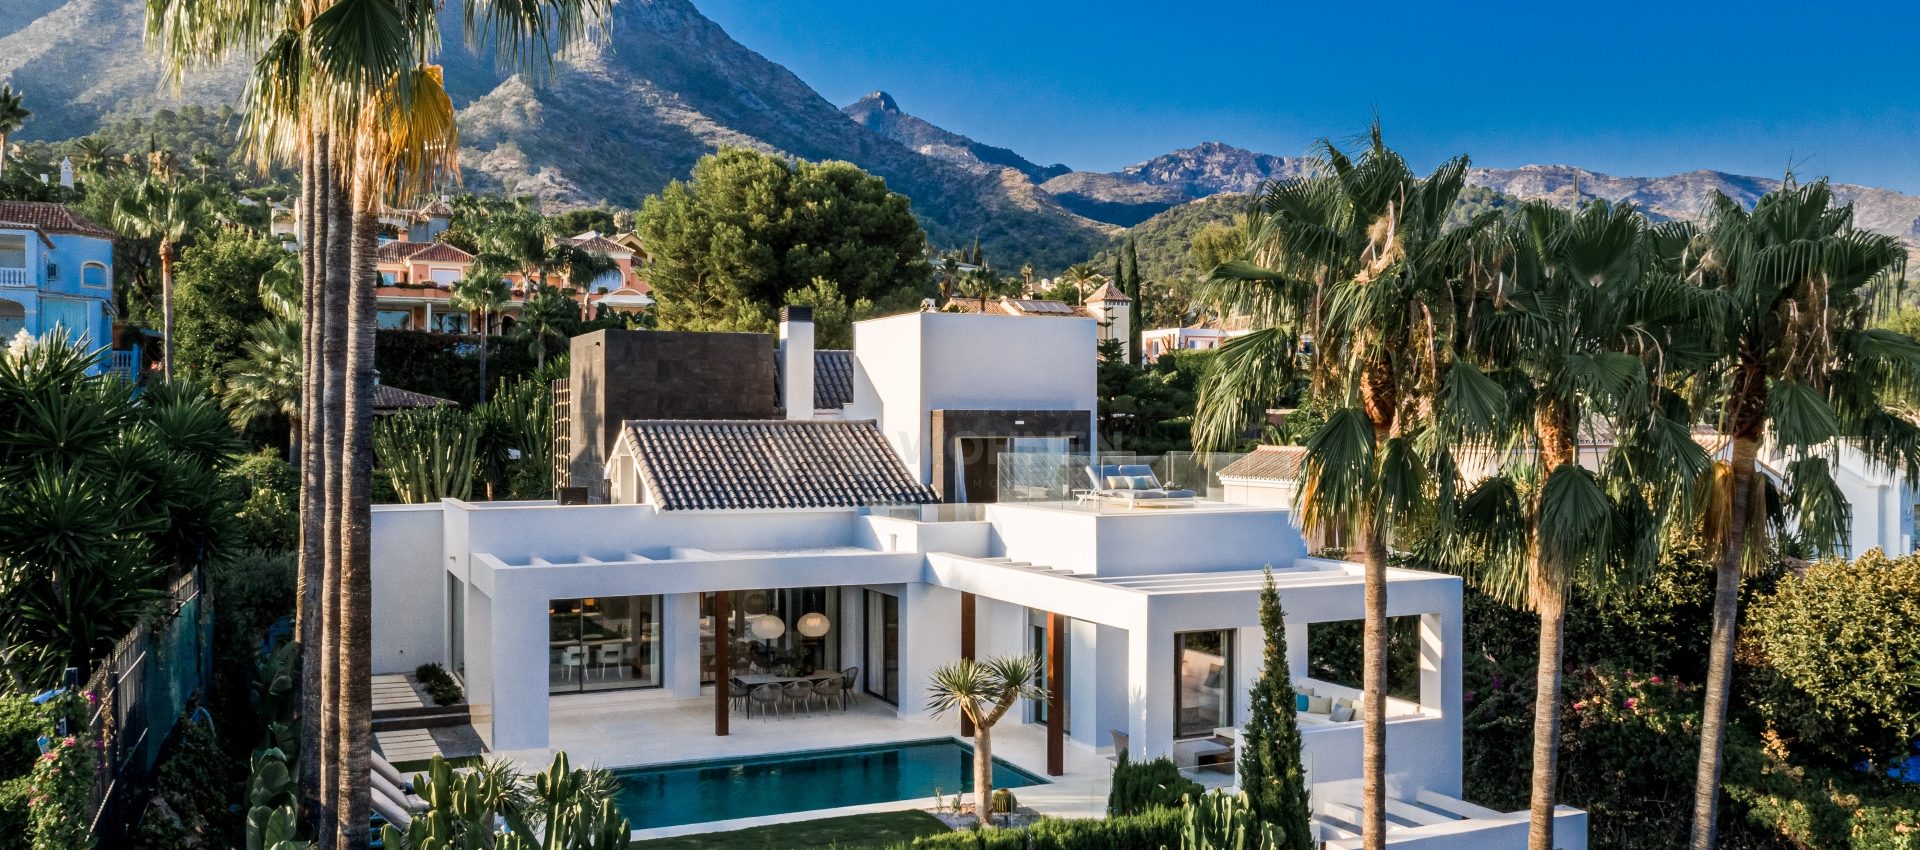 Elegante villa de obra nueva en Sierra Blanca Milla de Oro Marbella